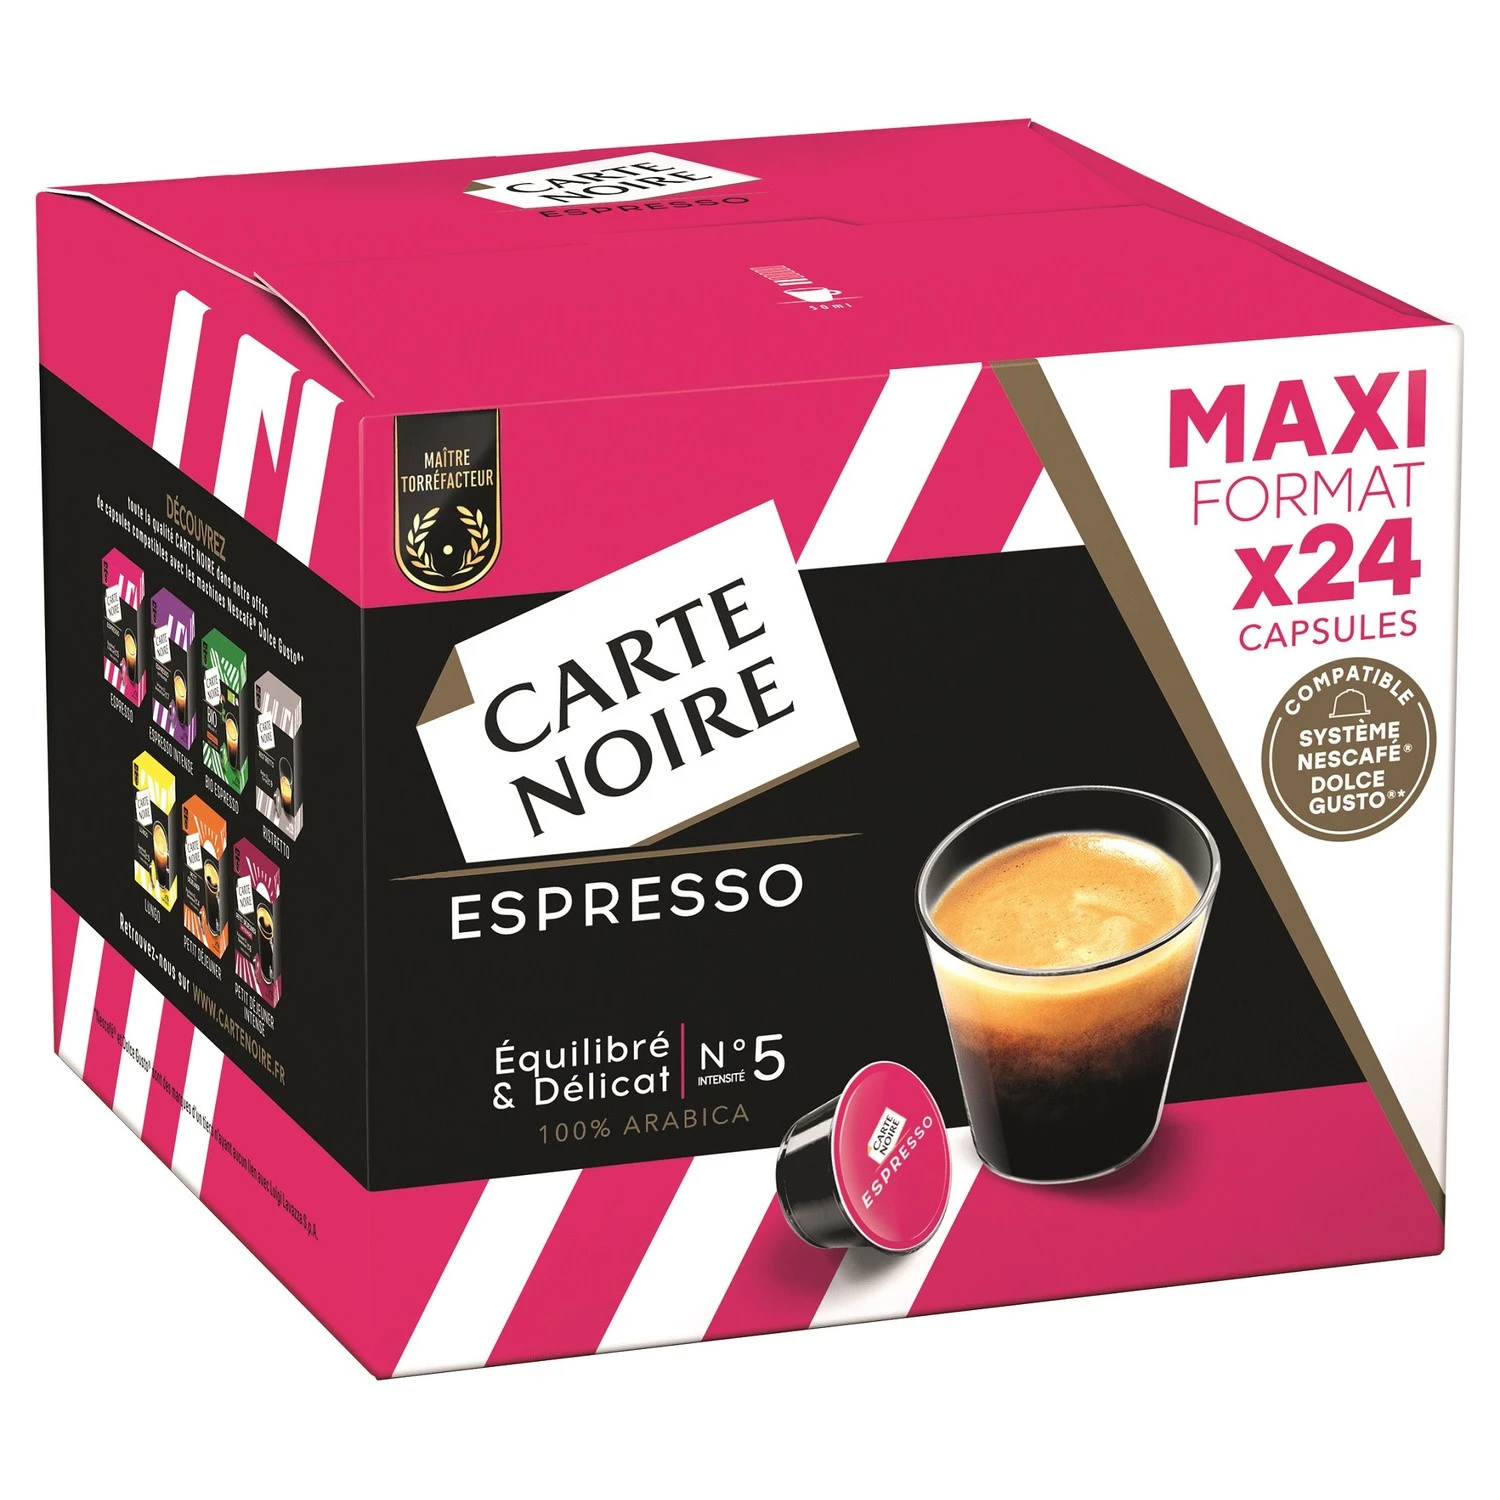 Cn Caps Dgc Espresso 192g